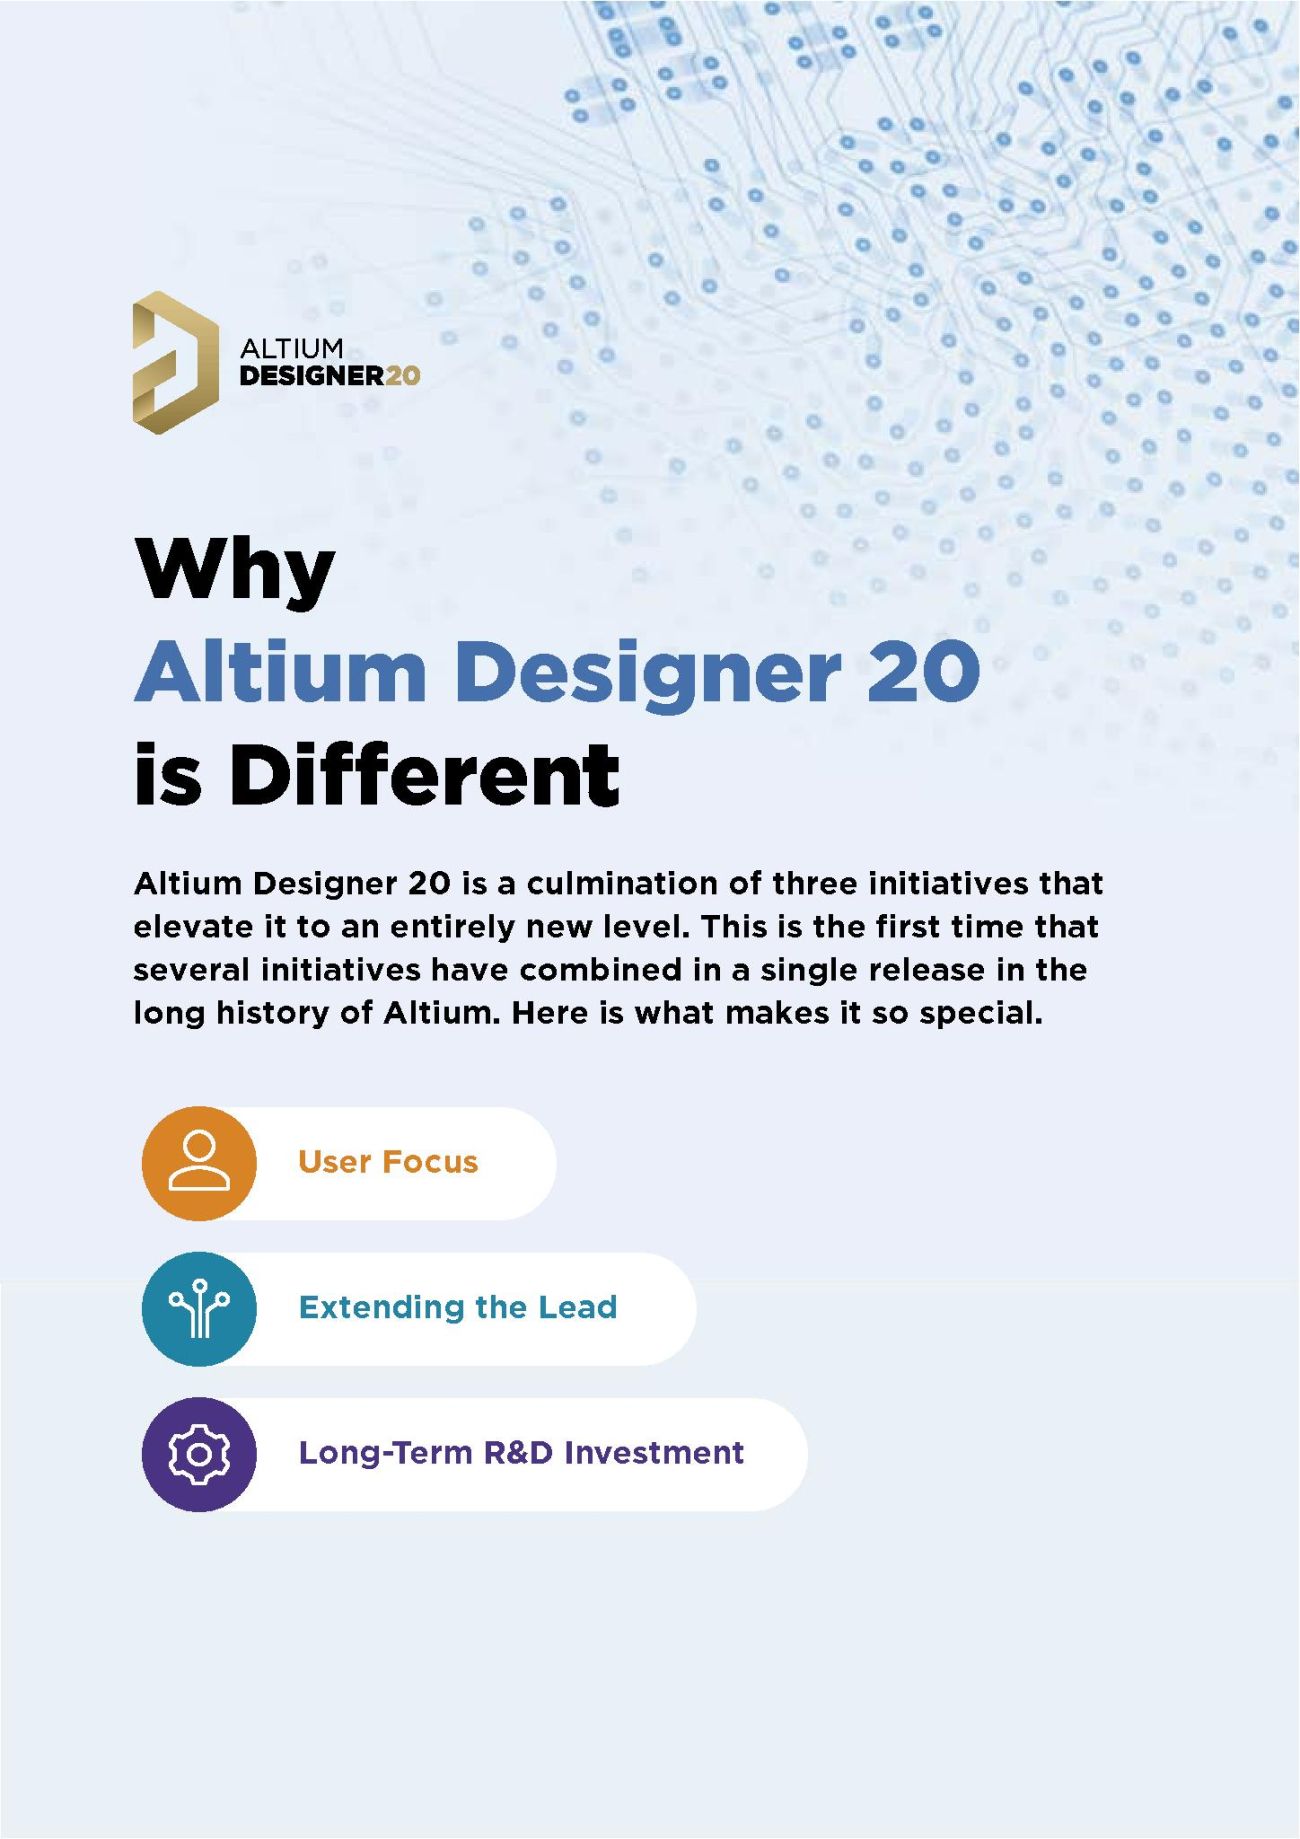 Why Altium Designer 20 is Different